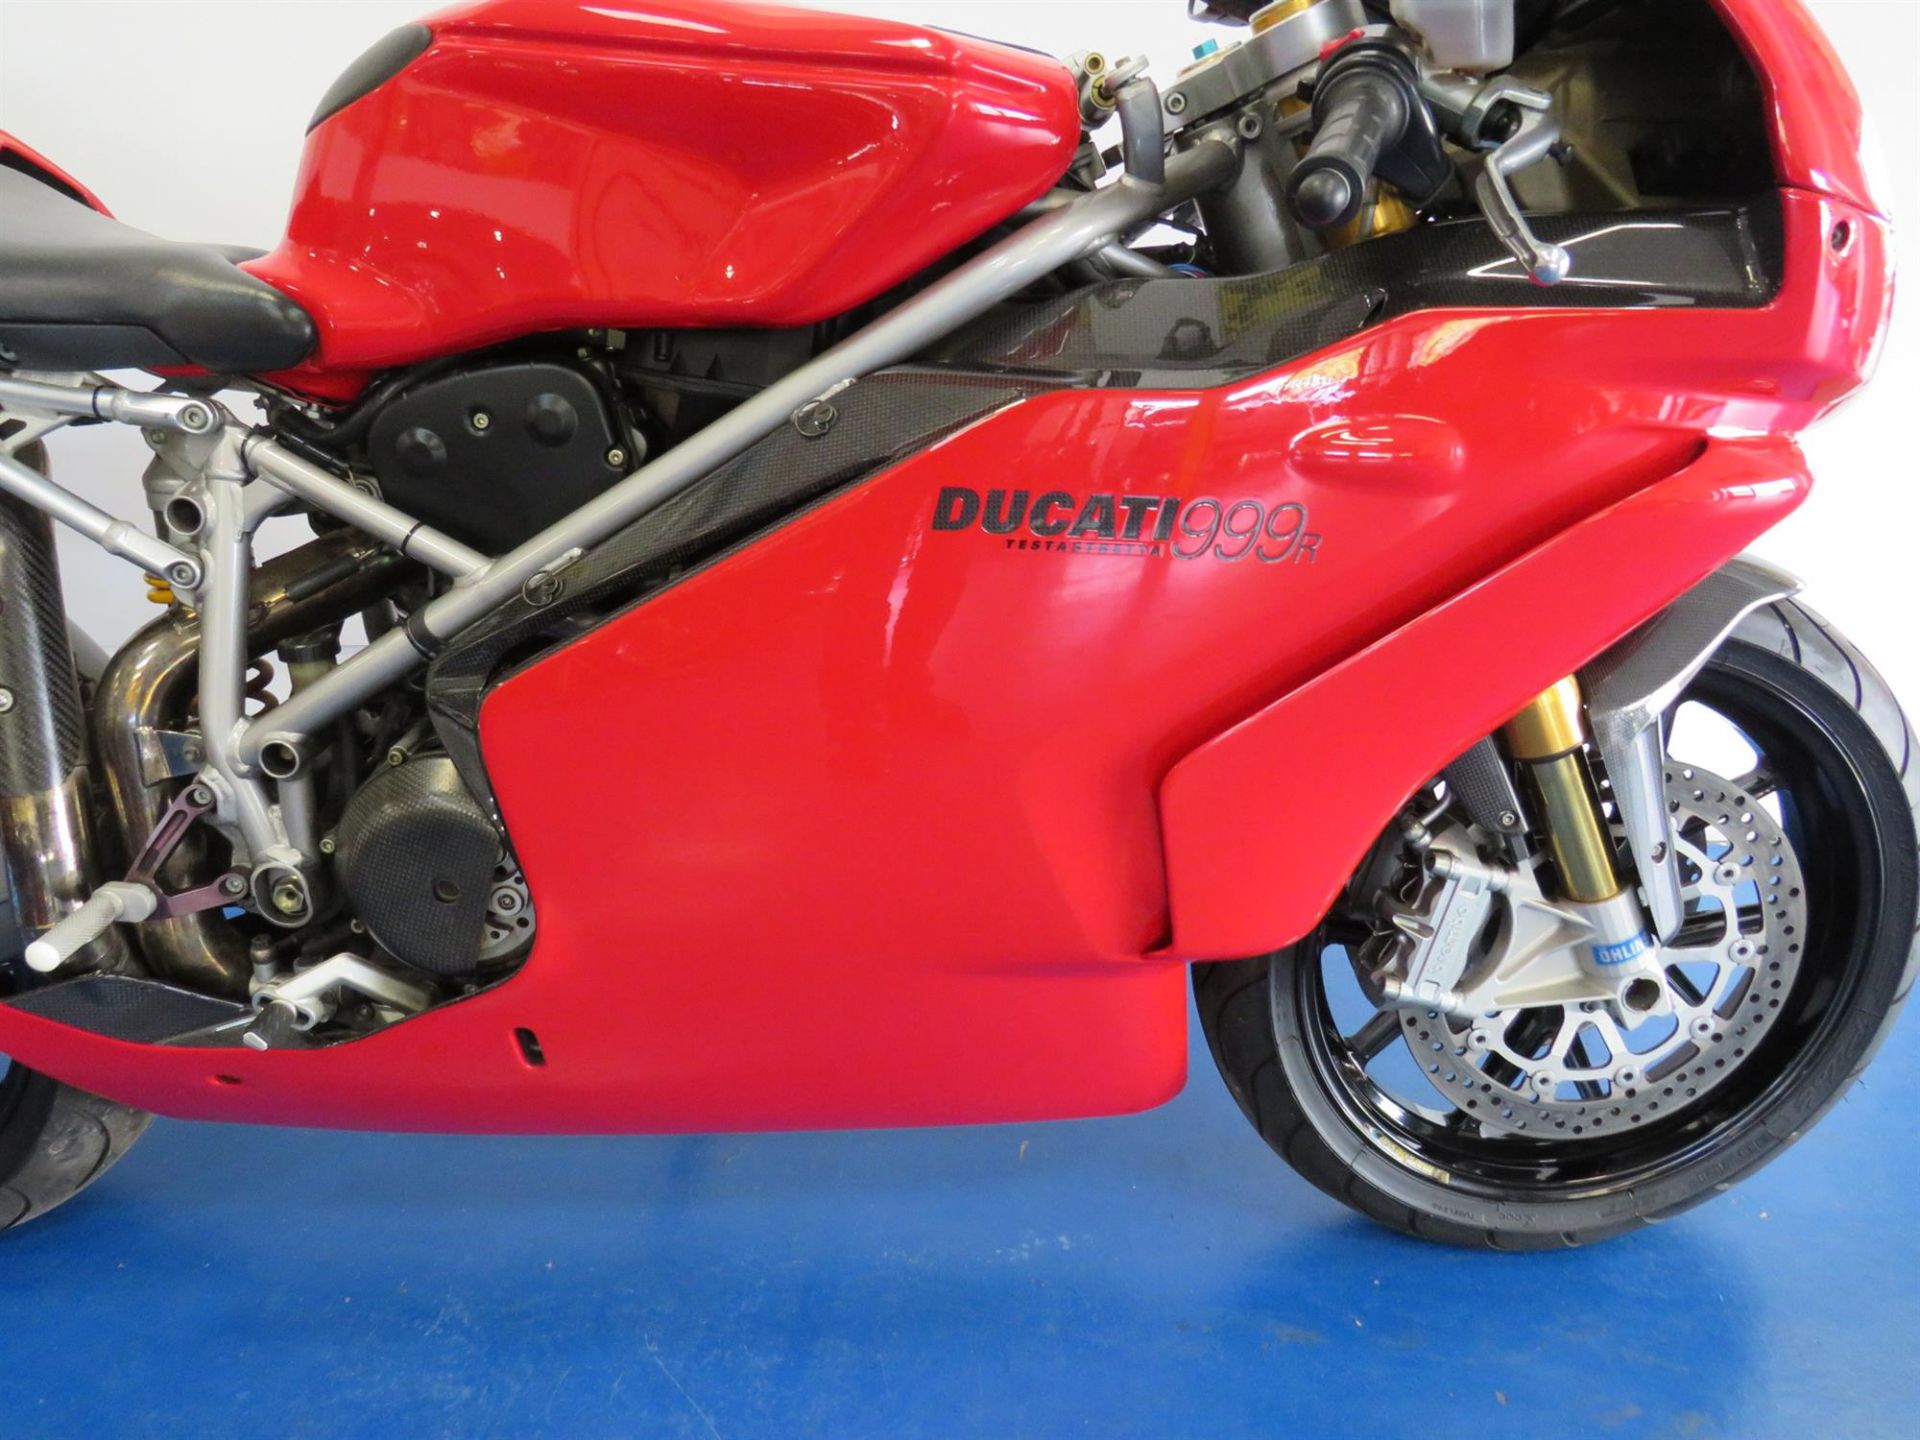 2003 Ducati 999R 999cc - Image 3 of 10